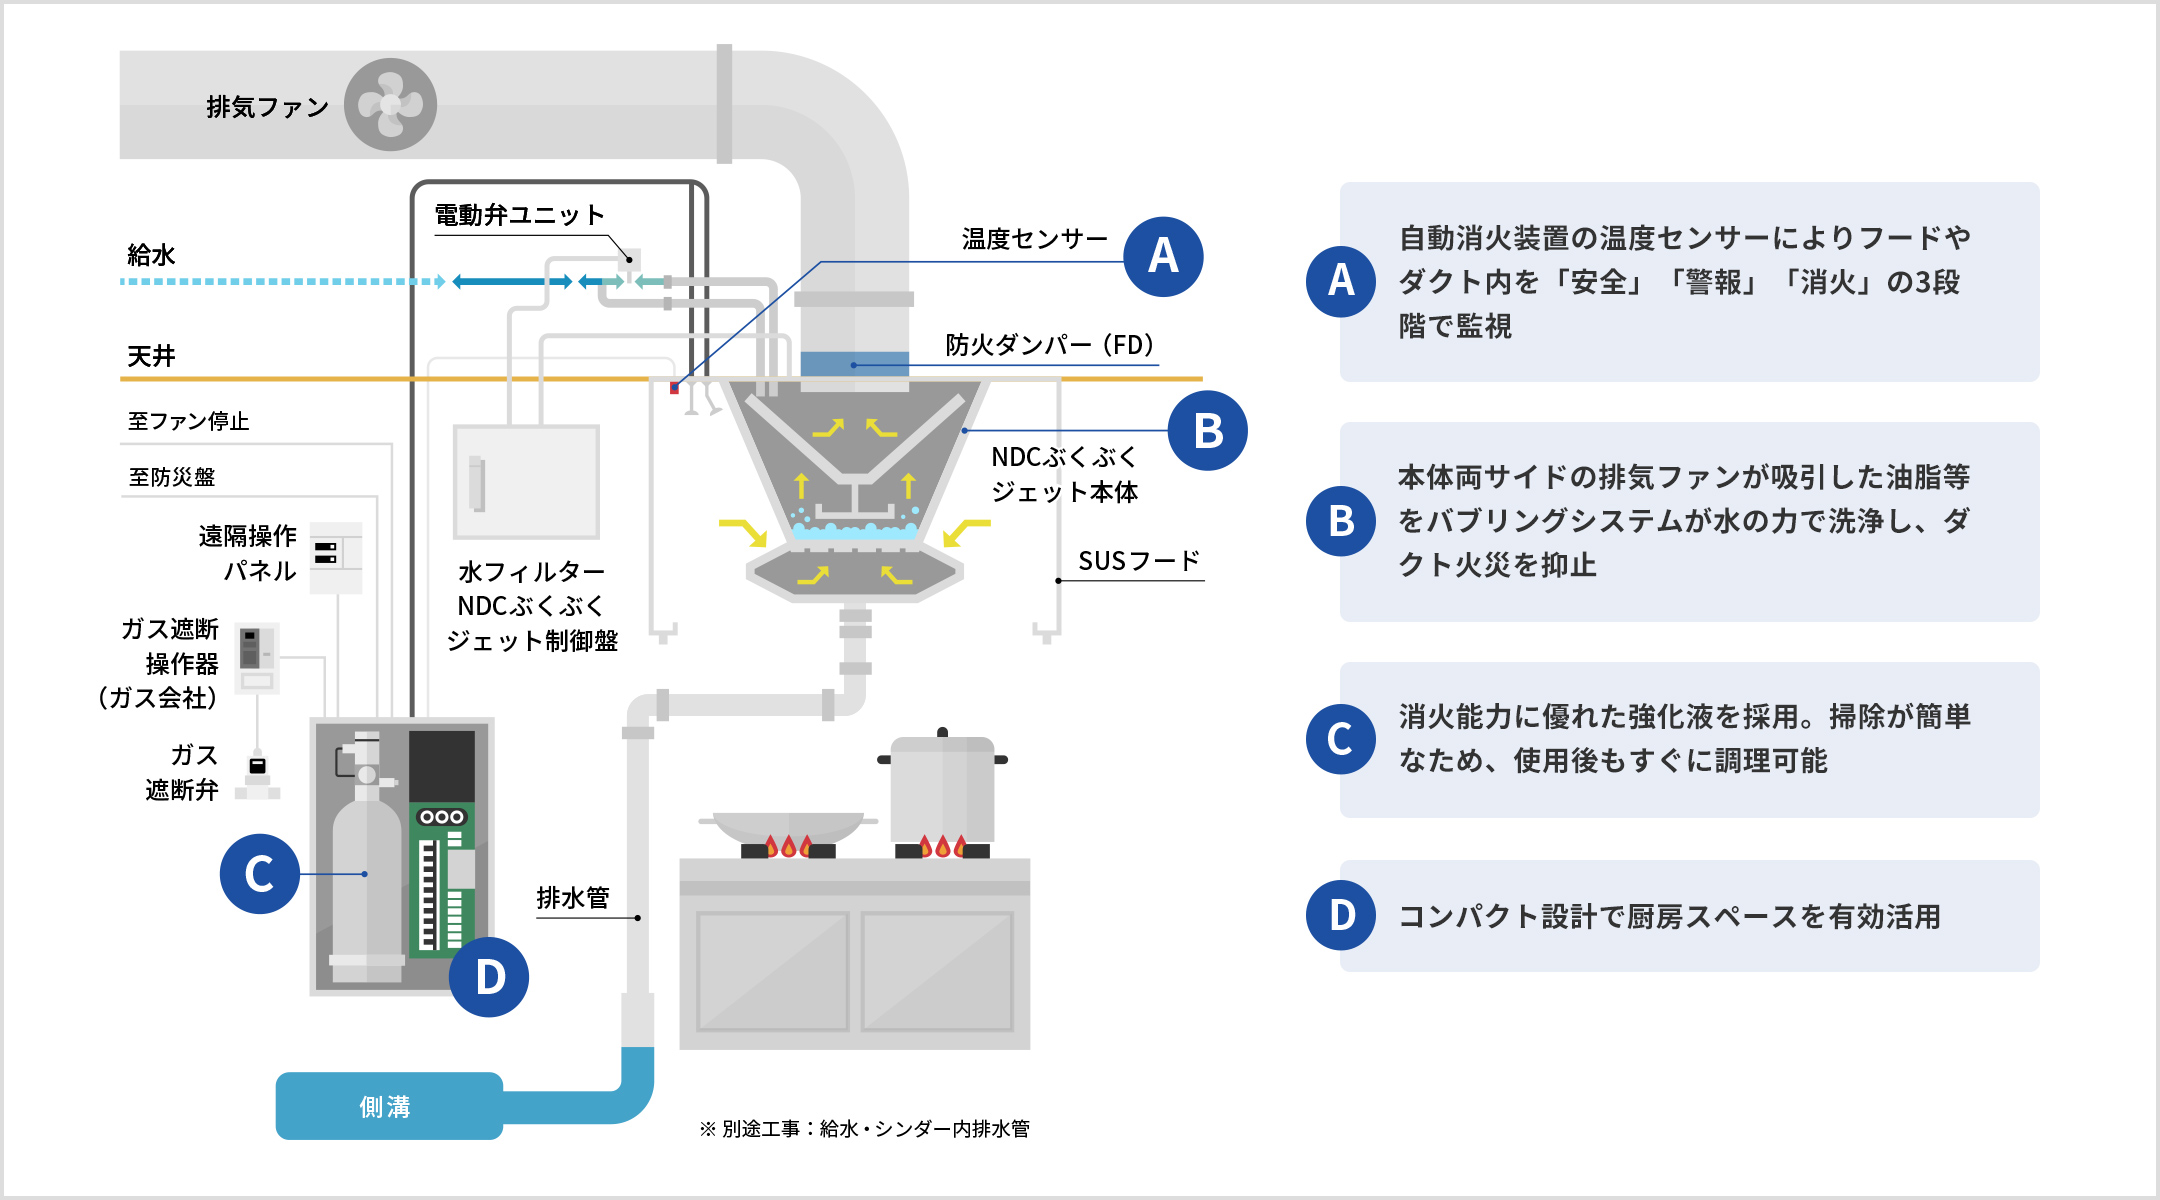 (A)温度センサー: 自動消火装置の温度センサーによりフードやダクト内を「安全」「警報」「消火」の３段階で監視。天井に設置。(B)NDCぶくぶくジェット本体: 本体両サイドの排気ファンが吸引した油脂等をバブリングシステムが水の力で洗浄し、ダクト火災を抑止。排気ファンの吸込口（SUSフードの内側）に設置。排気ファンの吸込口付近には防火ダンパー（FD）を巻く。水フィルターNDCぶくぶくジェット制御盤で給水を電動弁ユニットを使って制御する。排水管から側溝につながる。(C)自動消火装置の消化液: 消化能力に優れた強化液を採用。掃除が簡単なため、使用後もすぐに調理可能。(D)自動消火装置: コンパクト設計で厨房スペースを有効活用。温度センサー、防災盤、ガス会社のガス遮断操作機につながる。ガス遮断操作機経由でガス遮断弁を制御する。ファンの停止も行う。※別途工事：給水・シンダー内排水管